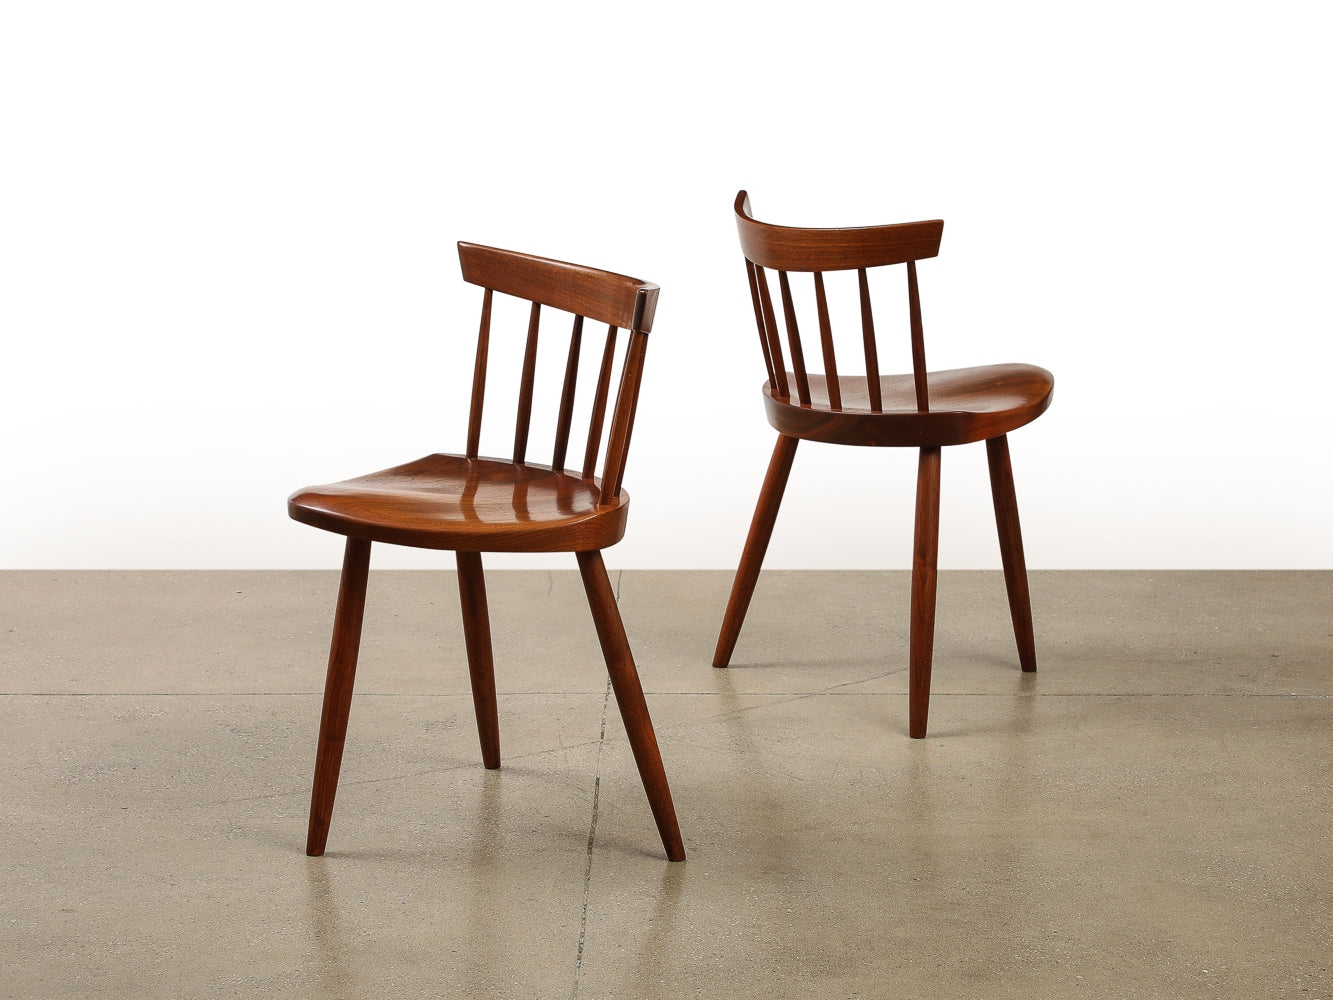 Pair of Mira Chairs by Mira Nakashima